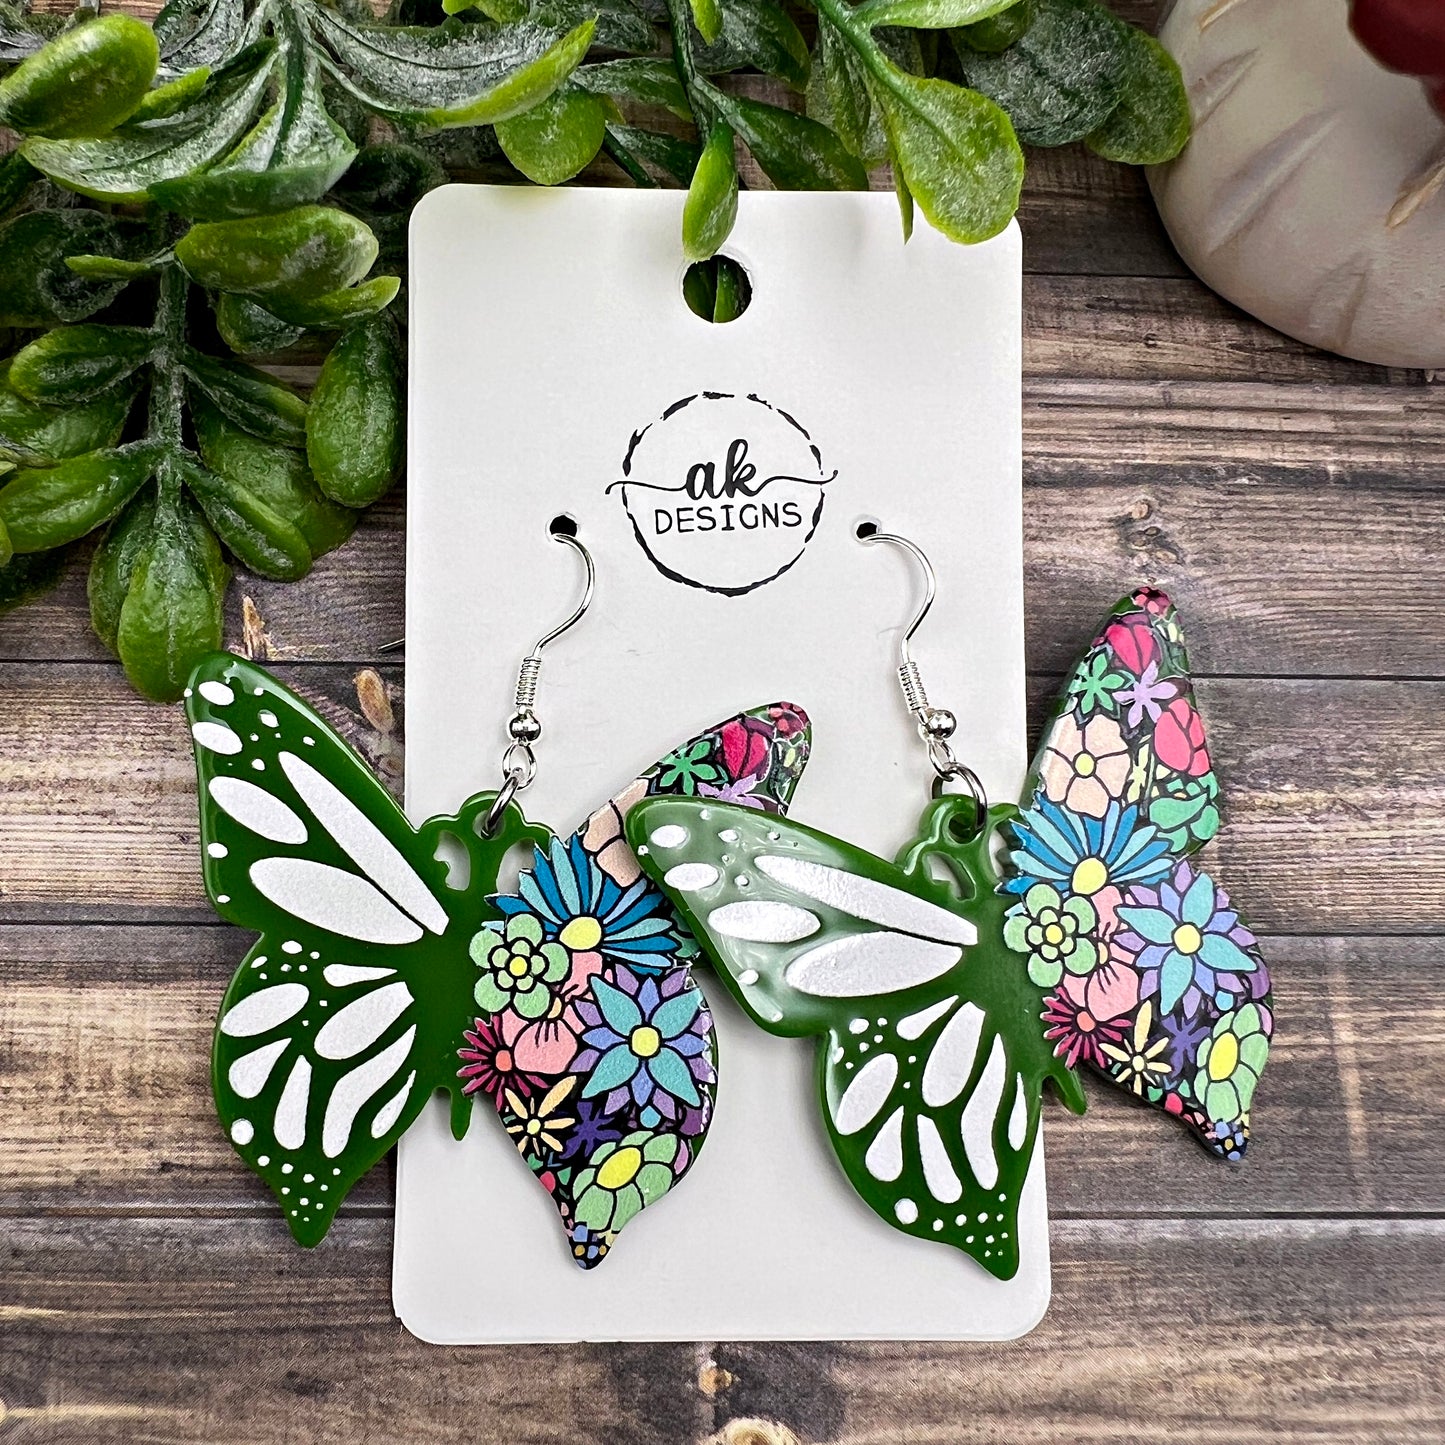 Black Green Acrylic Butterfly Earrings